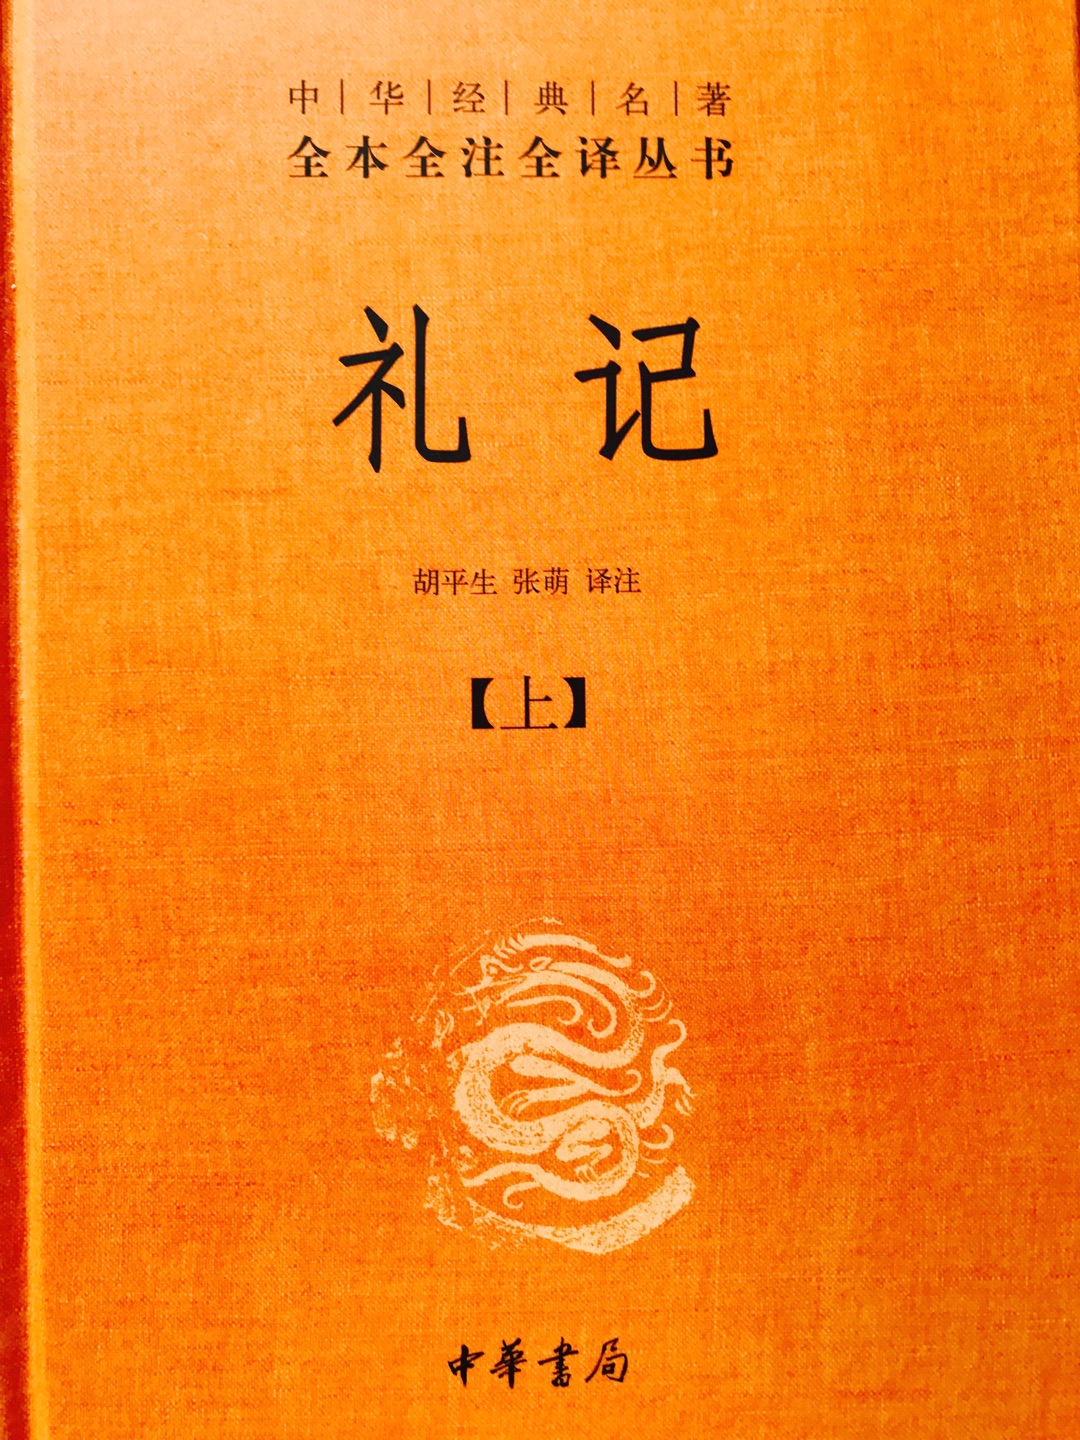 中华书局的书，一套两本，书的内容很好，质量也很不错。对商品、商家、物流和配送员都很赞！